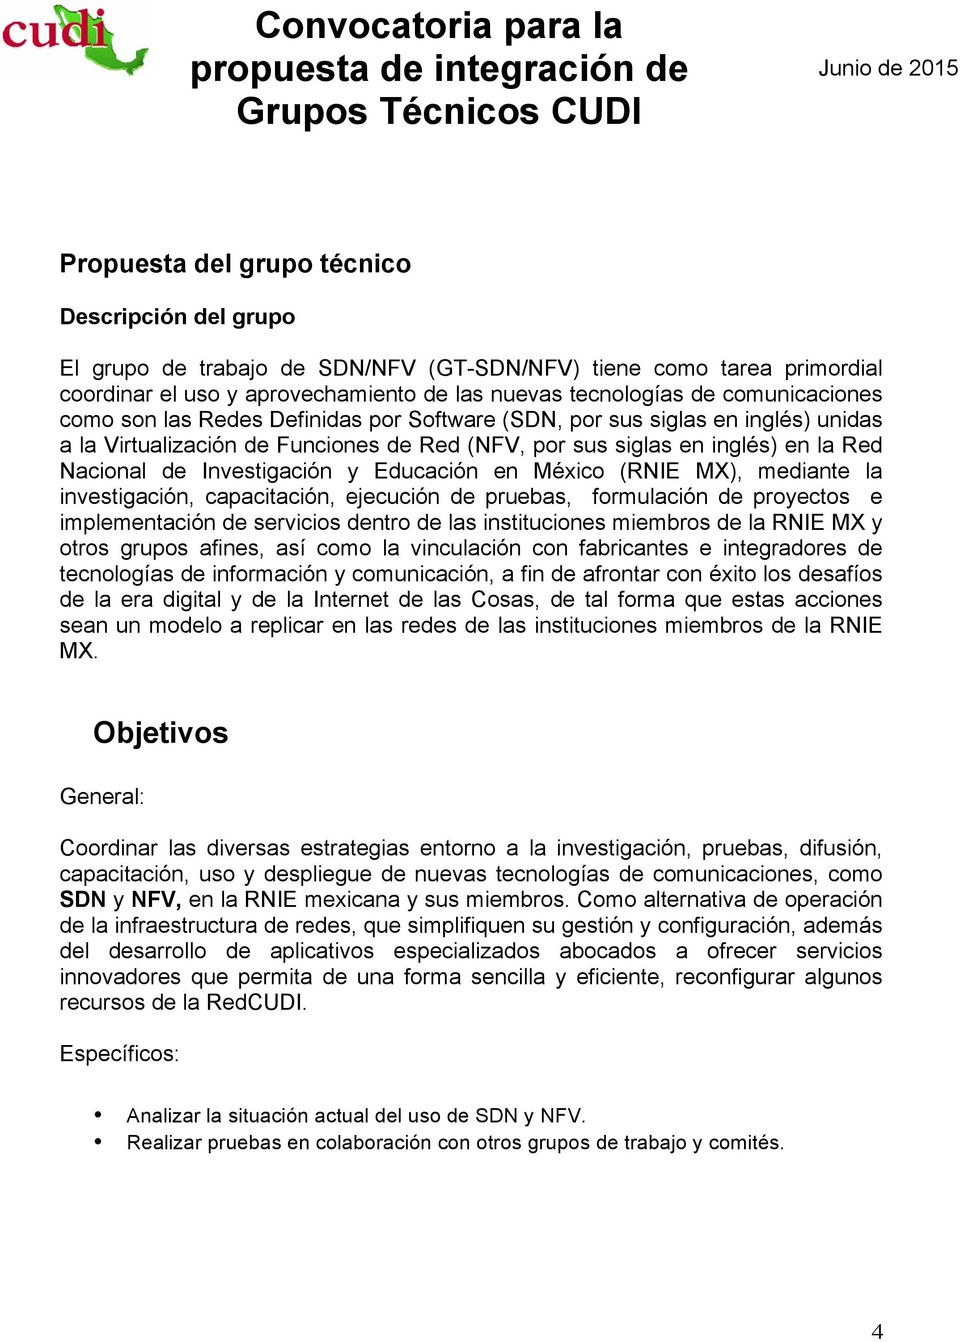 Investigación y Educación en México (RNIE MX), mediante la investigación, capacitación, ejecución de pruebas, formulación de proyectos e implementación de servicios dentro de las instituciones